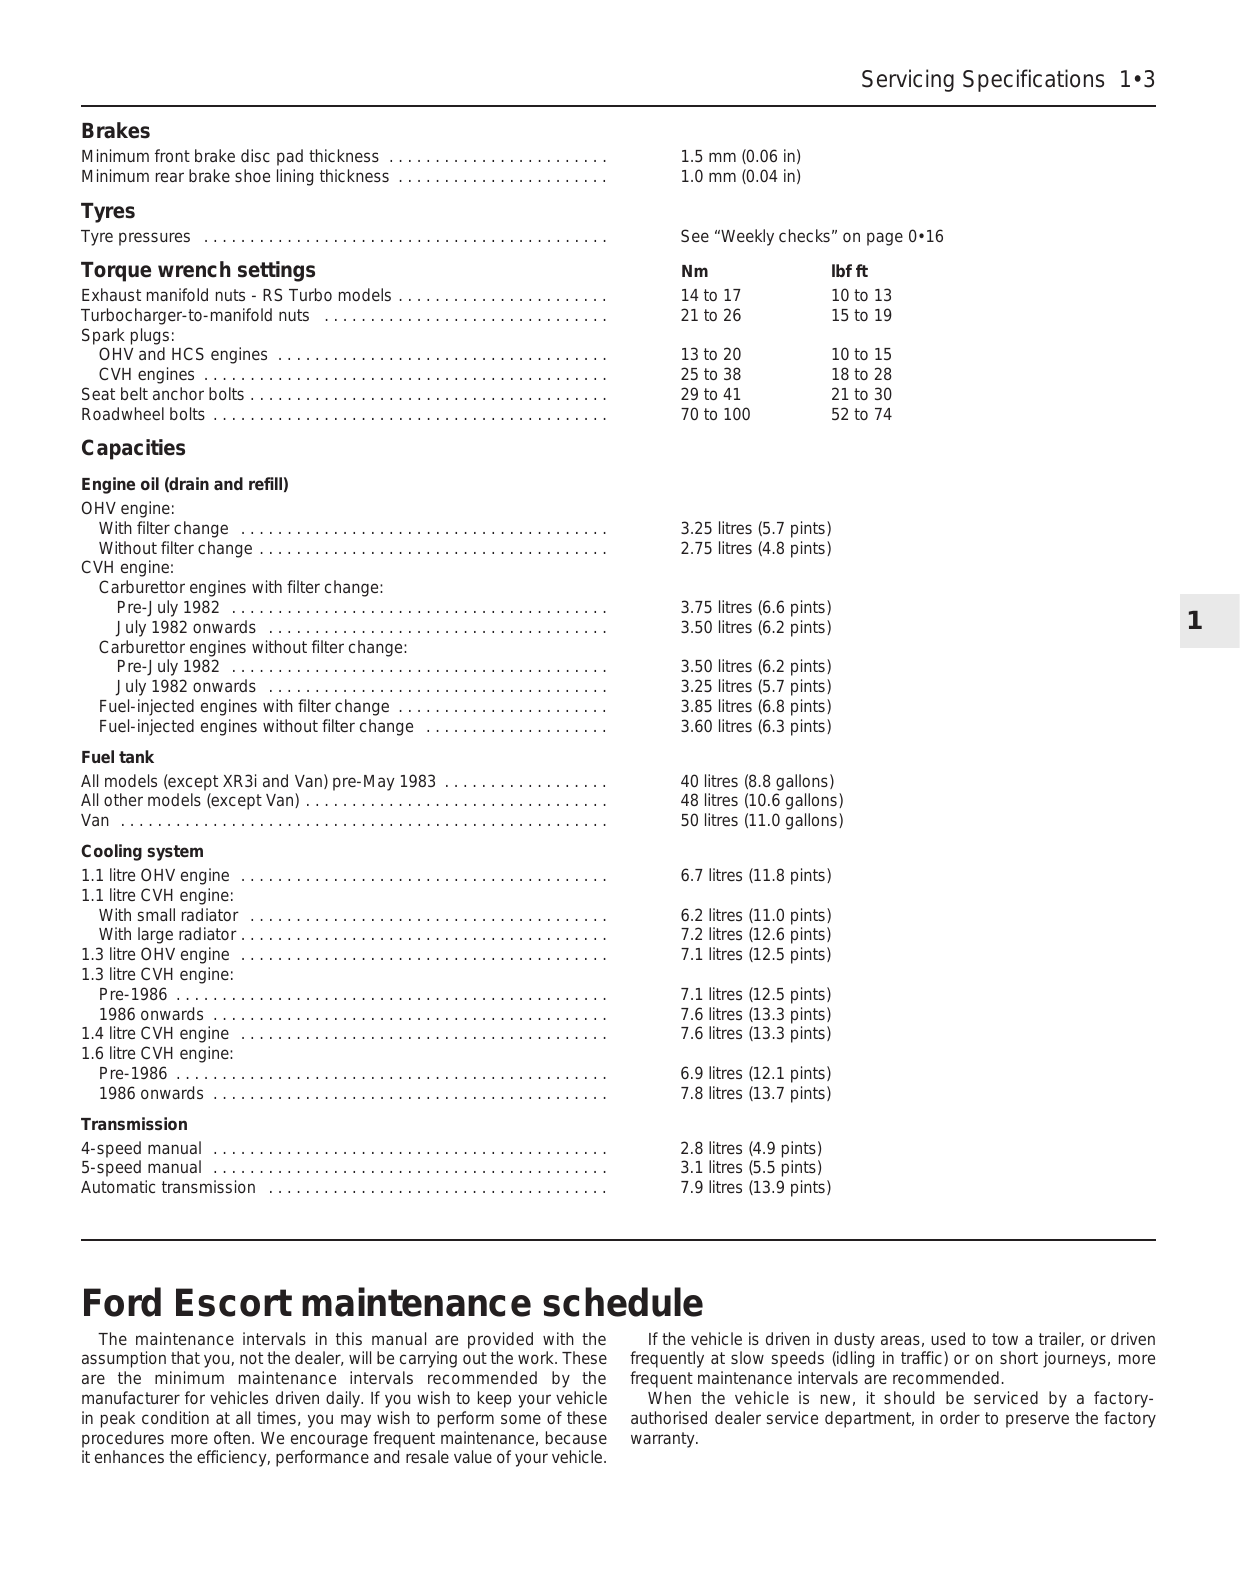 1982-1988 Ford Escort service, repair manual Preview image 3